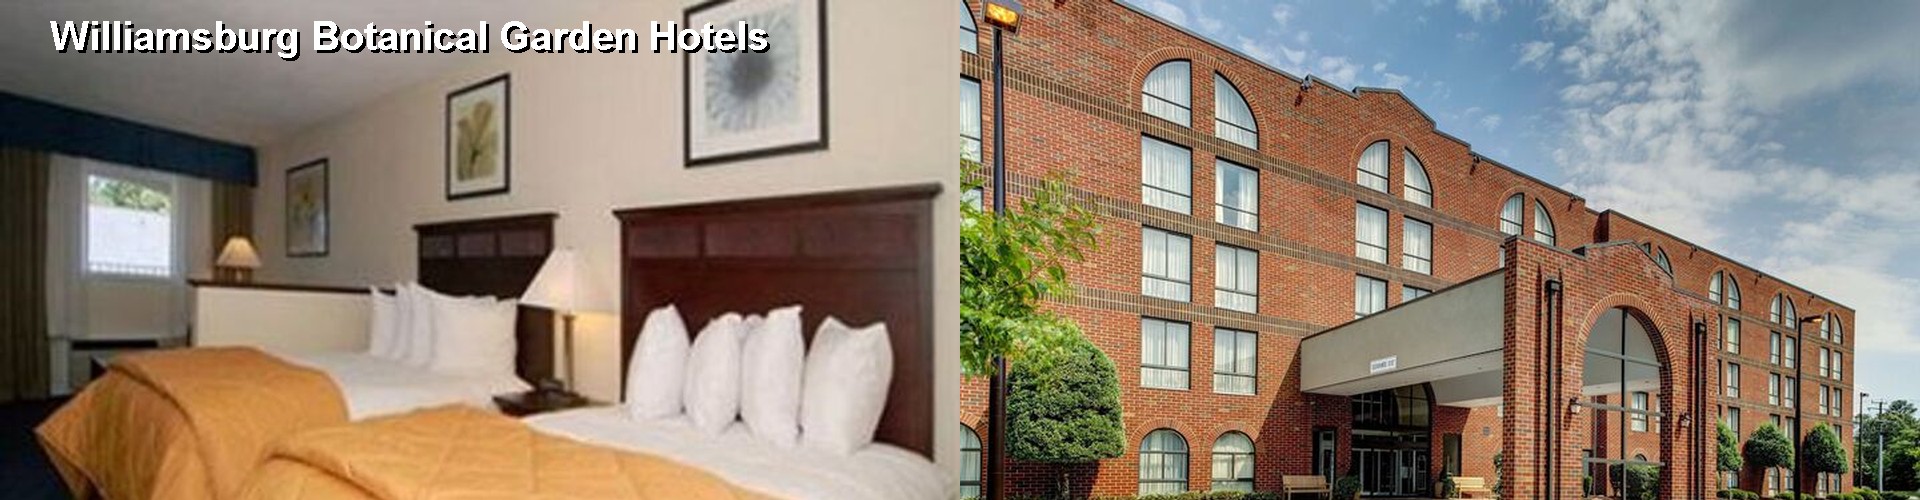 4 Best Hotels near Williamsburg Botanical Garden